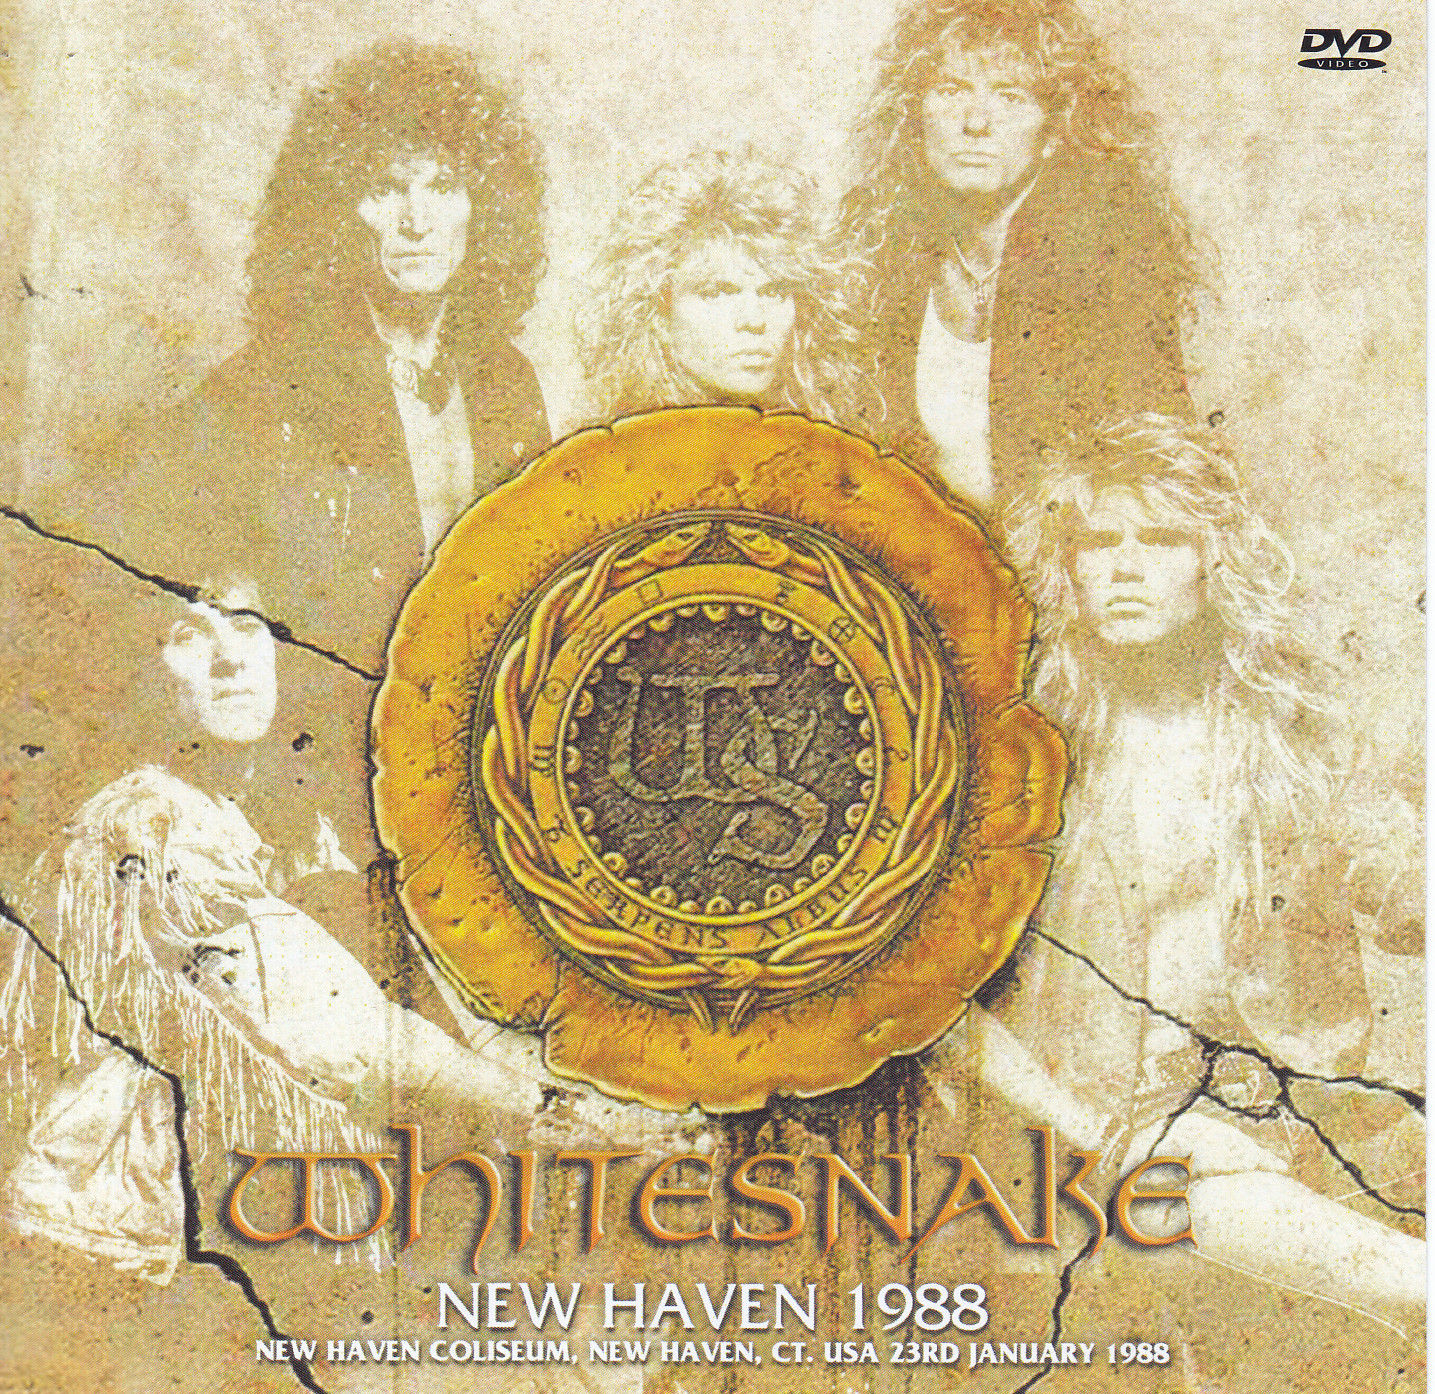 Whitesnake / New Haven 1988 /1DVDR – GiGinJapan